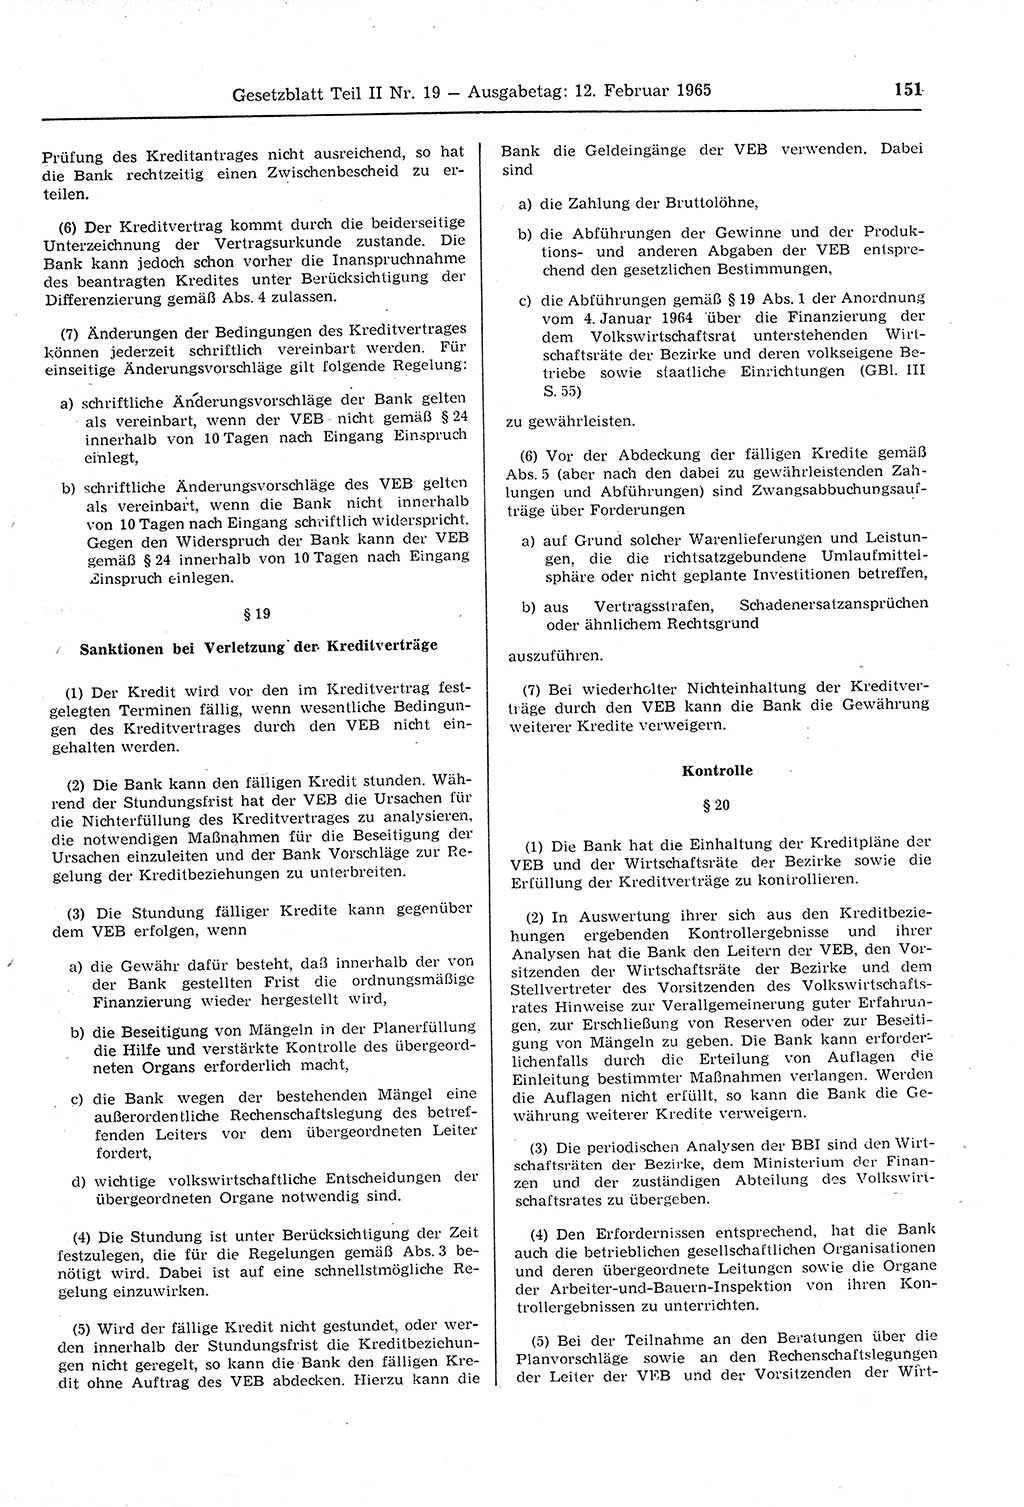 Gesetzblatt (GBl.) der Deutschen Demokratischen Republik (DDR) Teil ⅠⅠ 1965, Seite 151 (GBl. DDR ⅠⅠ 1965, S. 151)